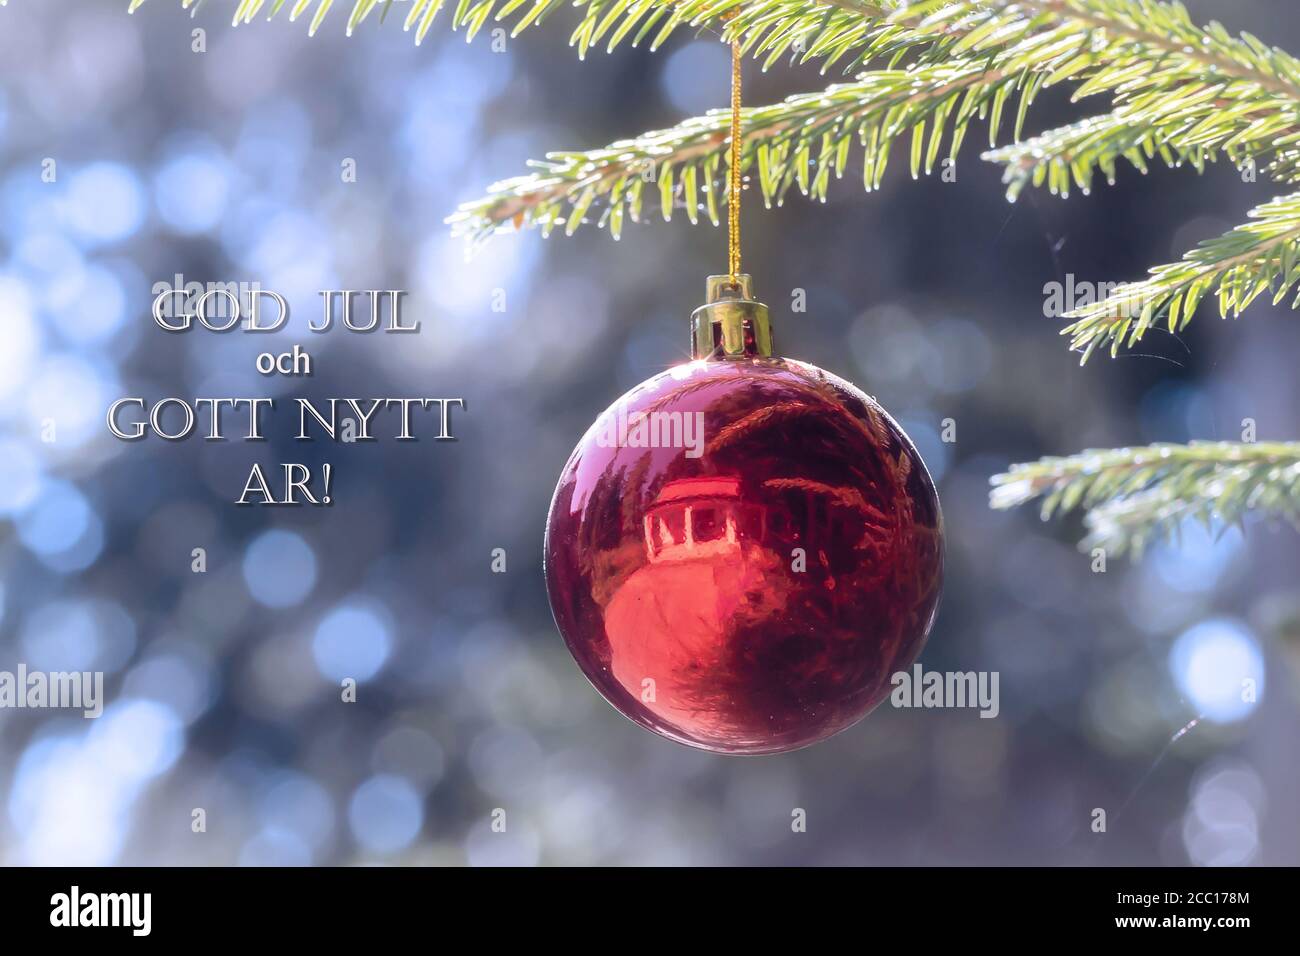 Buon Natale In Danese.God Jul Immagini E Fotos Stock Alamy